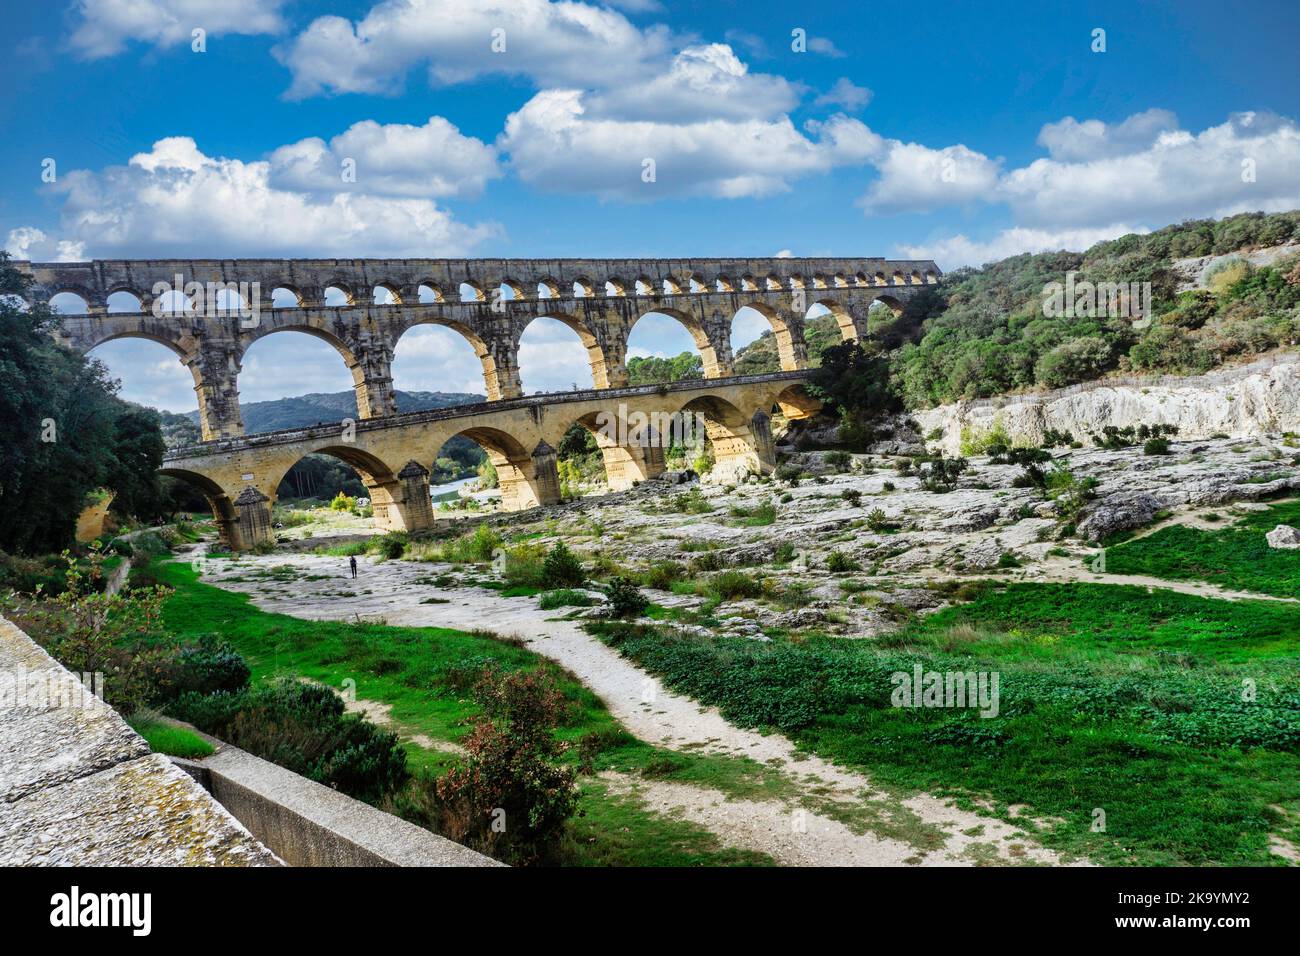 L'aqueduc romain de Pont du Gard, France. Construit dans le 1st siècle AD.A UNESCO World Heritge site. Banque D'Images